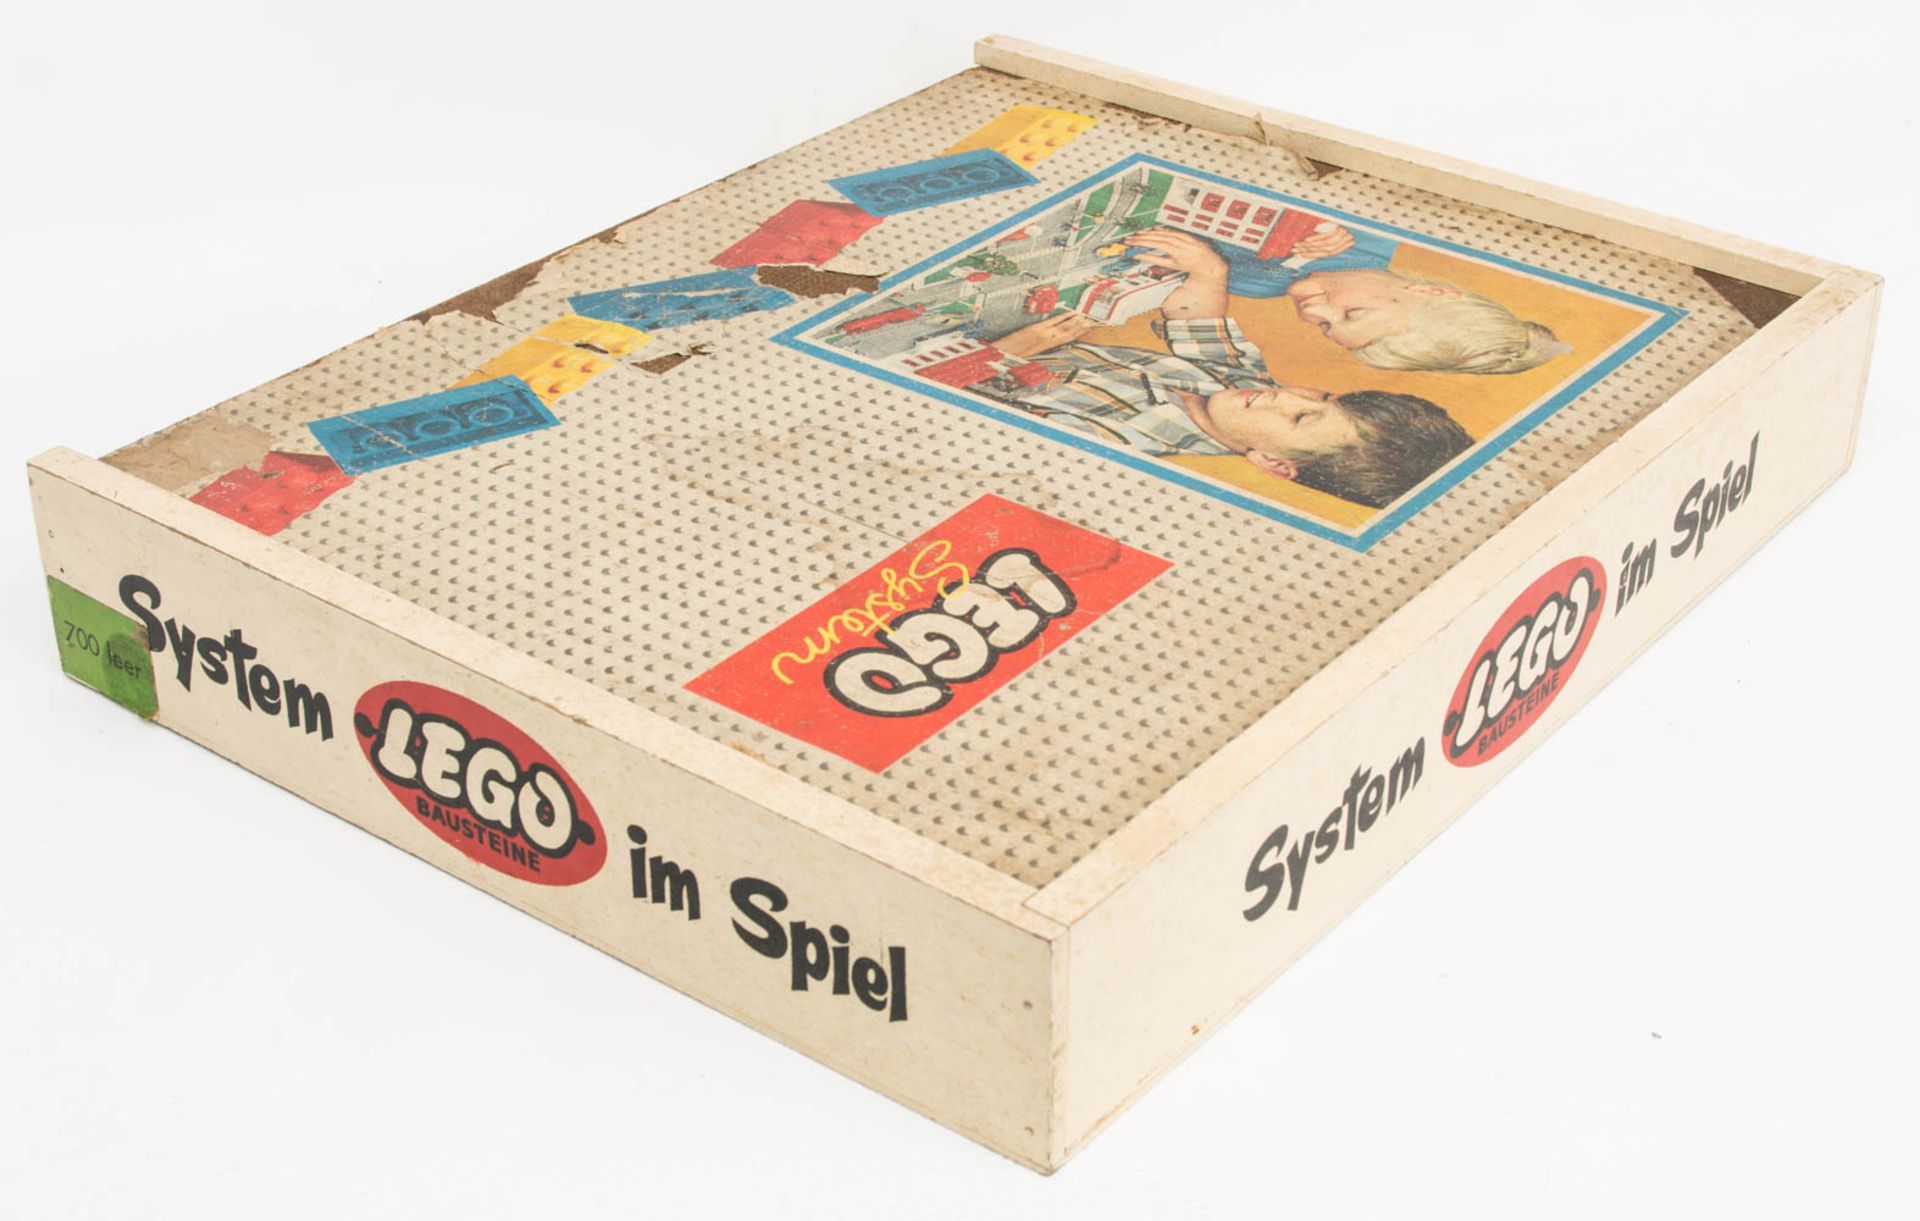 Lego System Kiste aus Holz, mit Legobausteinen, Mitte 20. Jh.Holzkiste mit Sortierfäch - Image 4 of 4